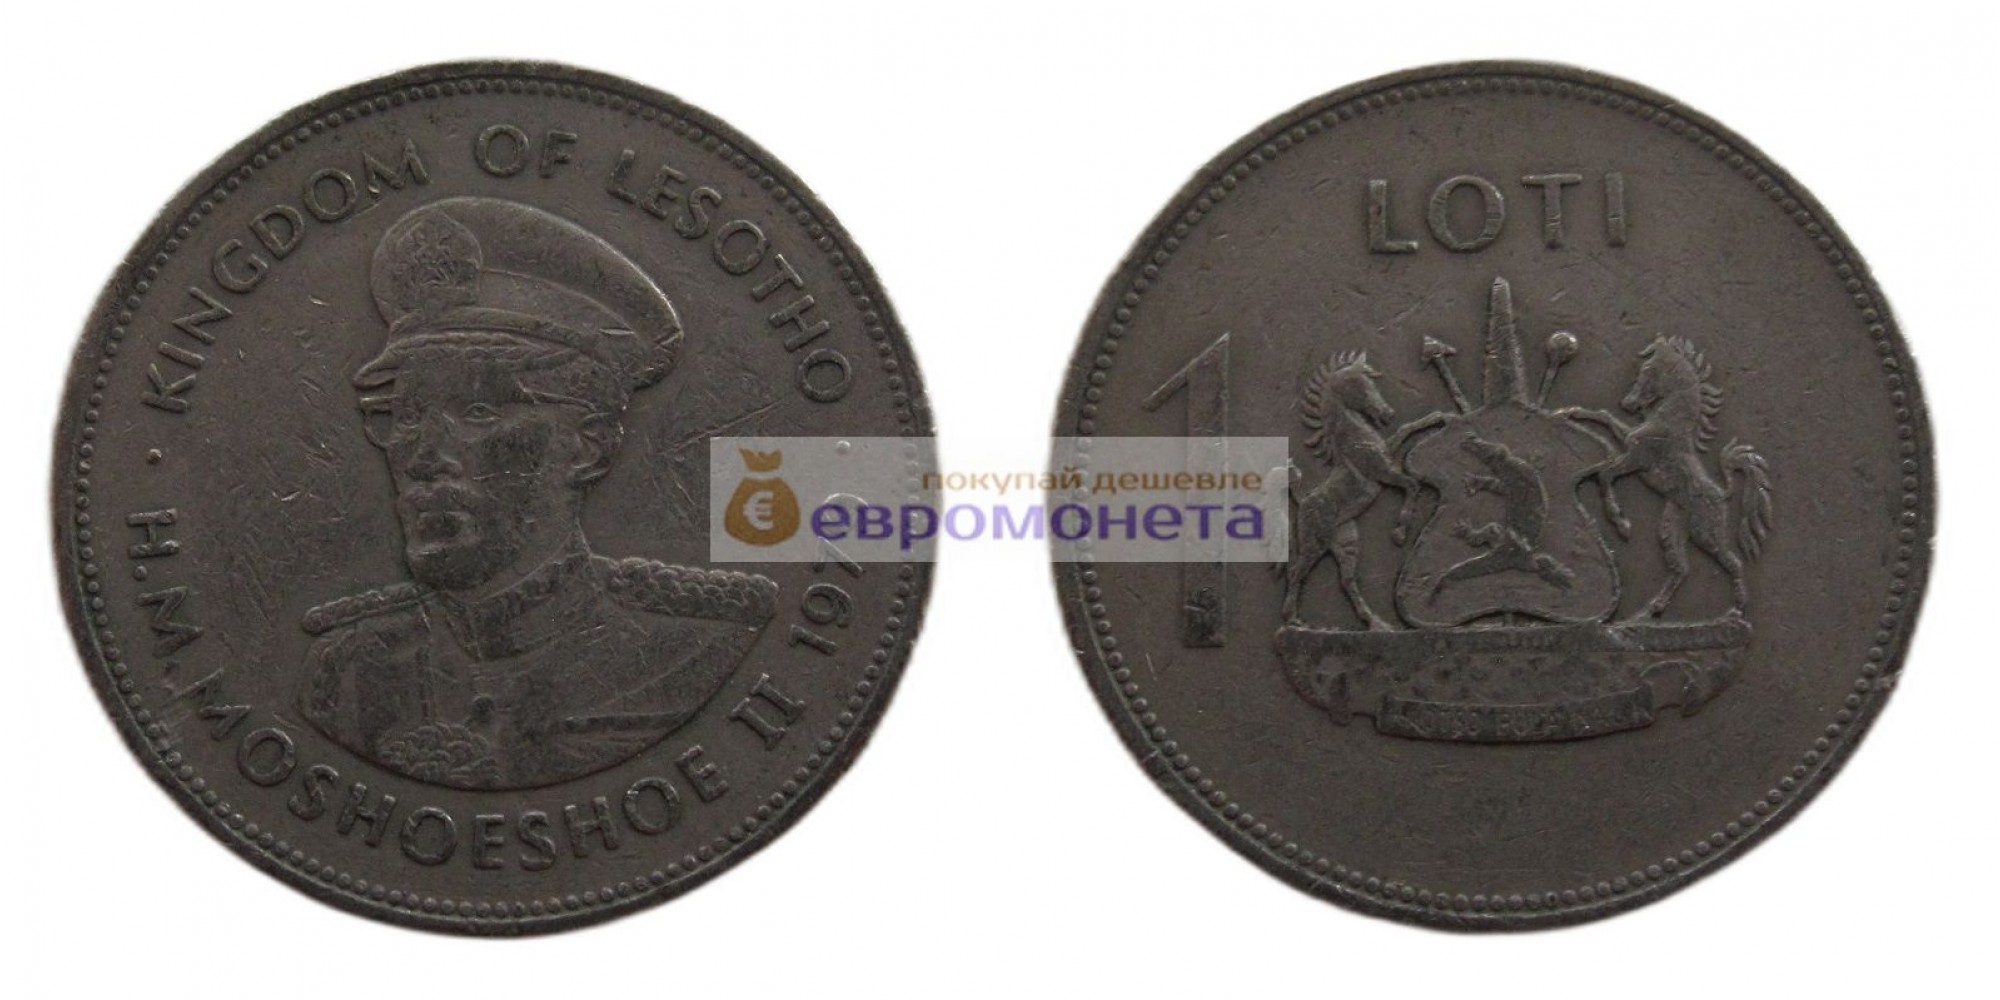 Королевство Лесото 1 лоти 1979 год